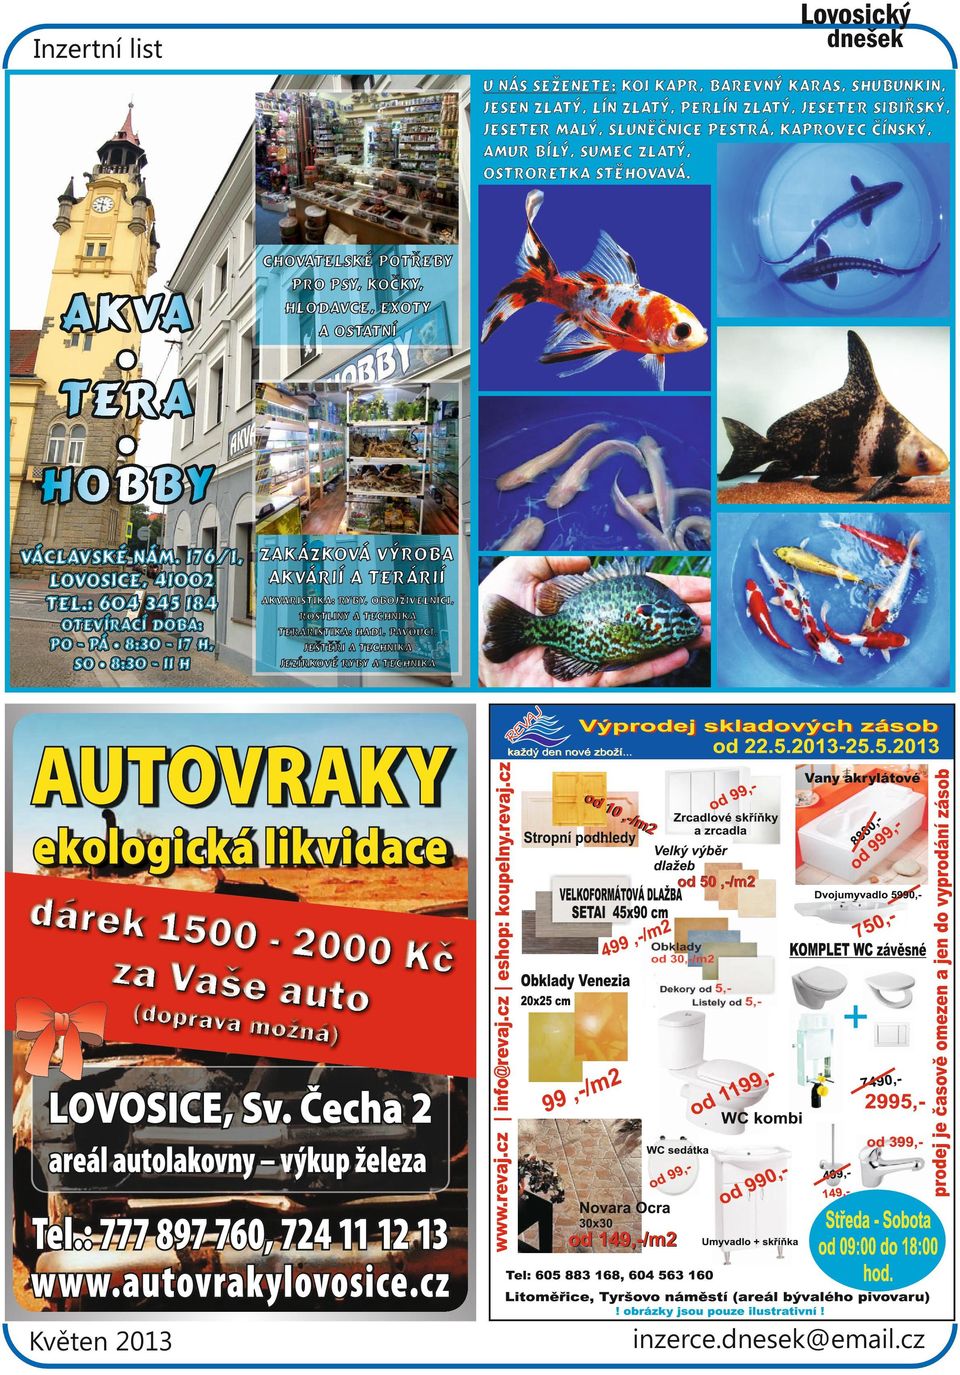 176/1, Zakázková výroba akvárií a terárií Lovosice, 41002 Akvaristika: ryby, obojživelníci, Tel.